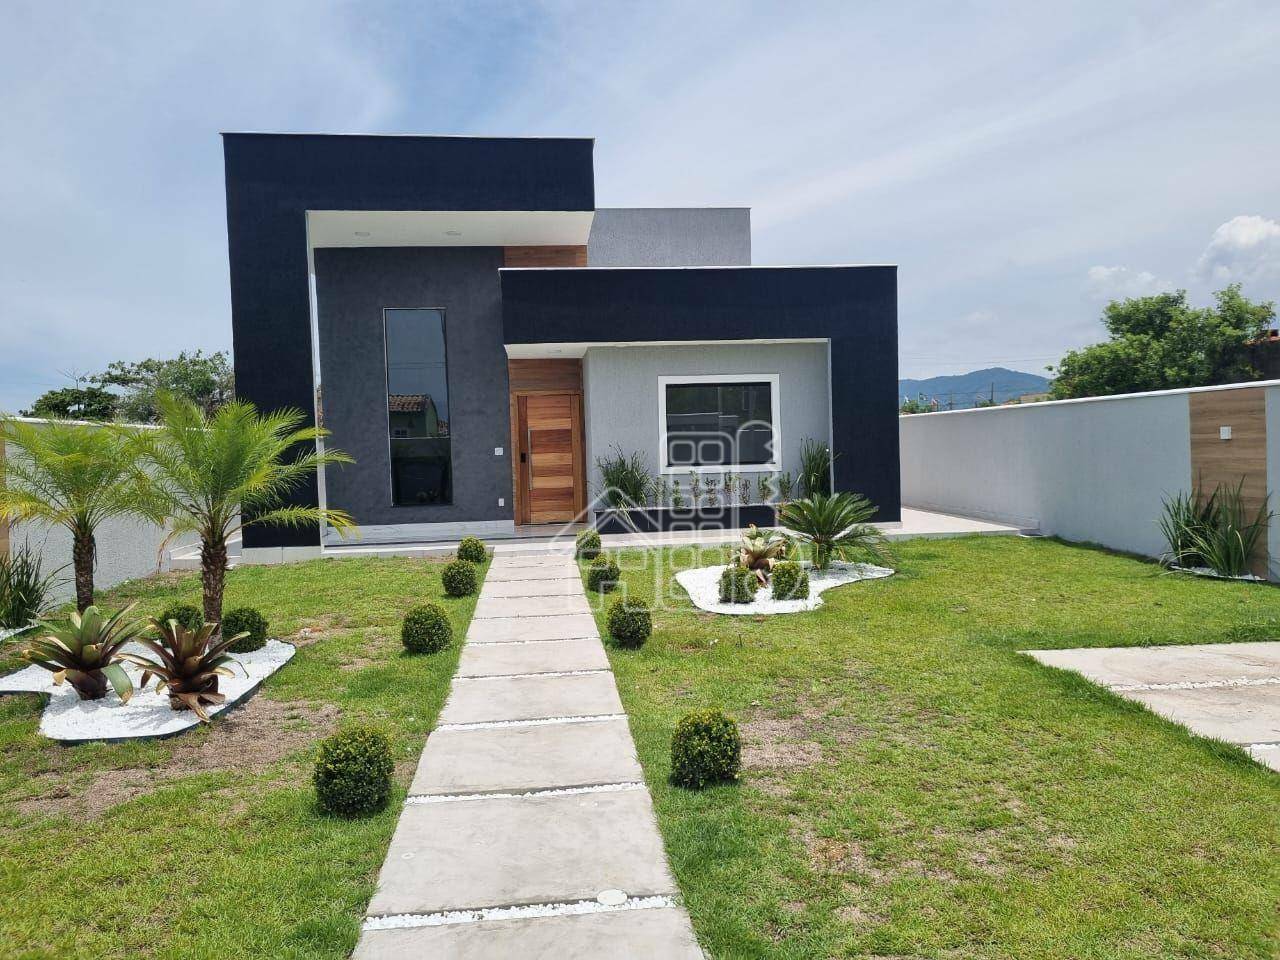 Casa com 3 dormitórios à venda, 106 m² por R$ 680.000,00 - Jardim Atlântico Leste (Itaipuaçu) - Maricá/RJ